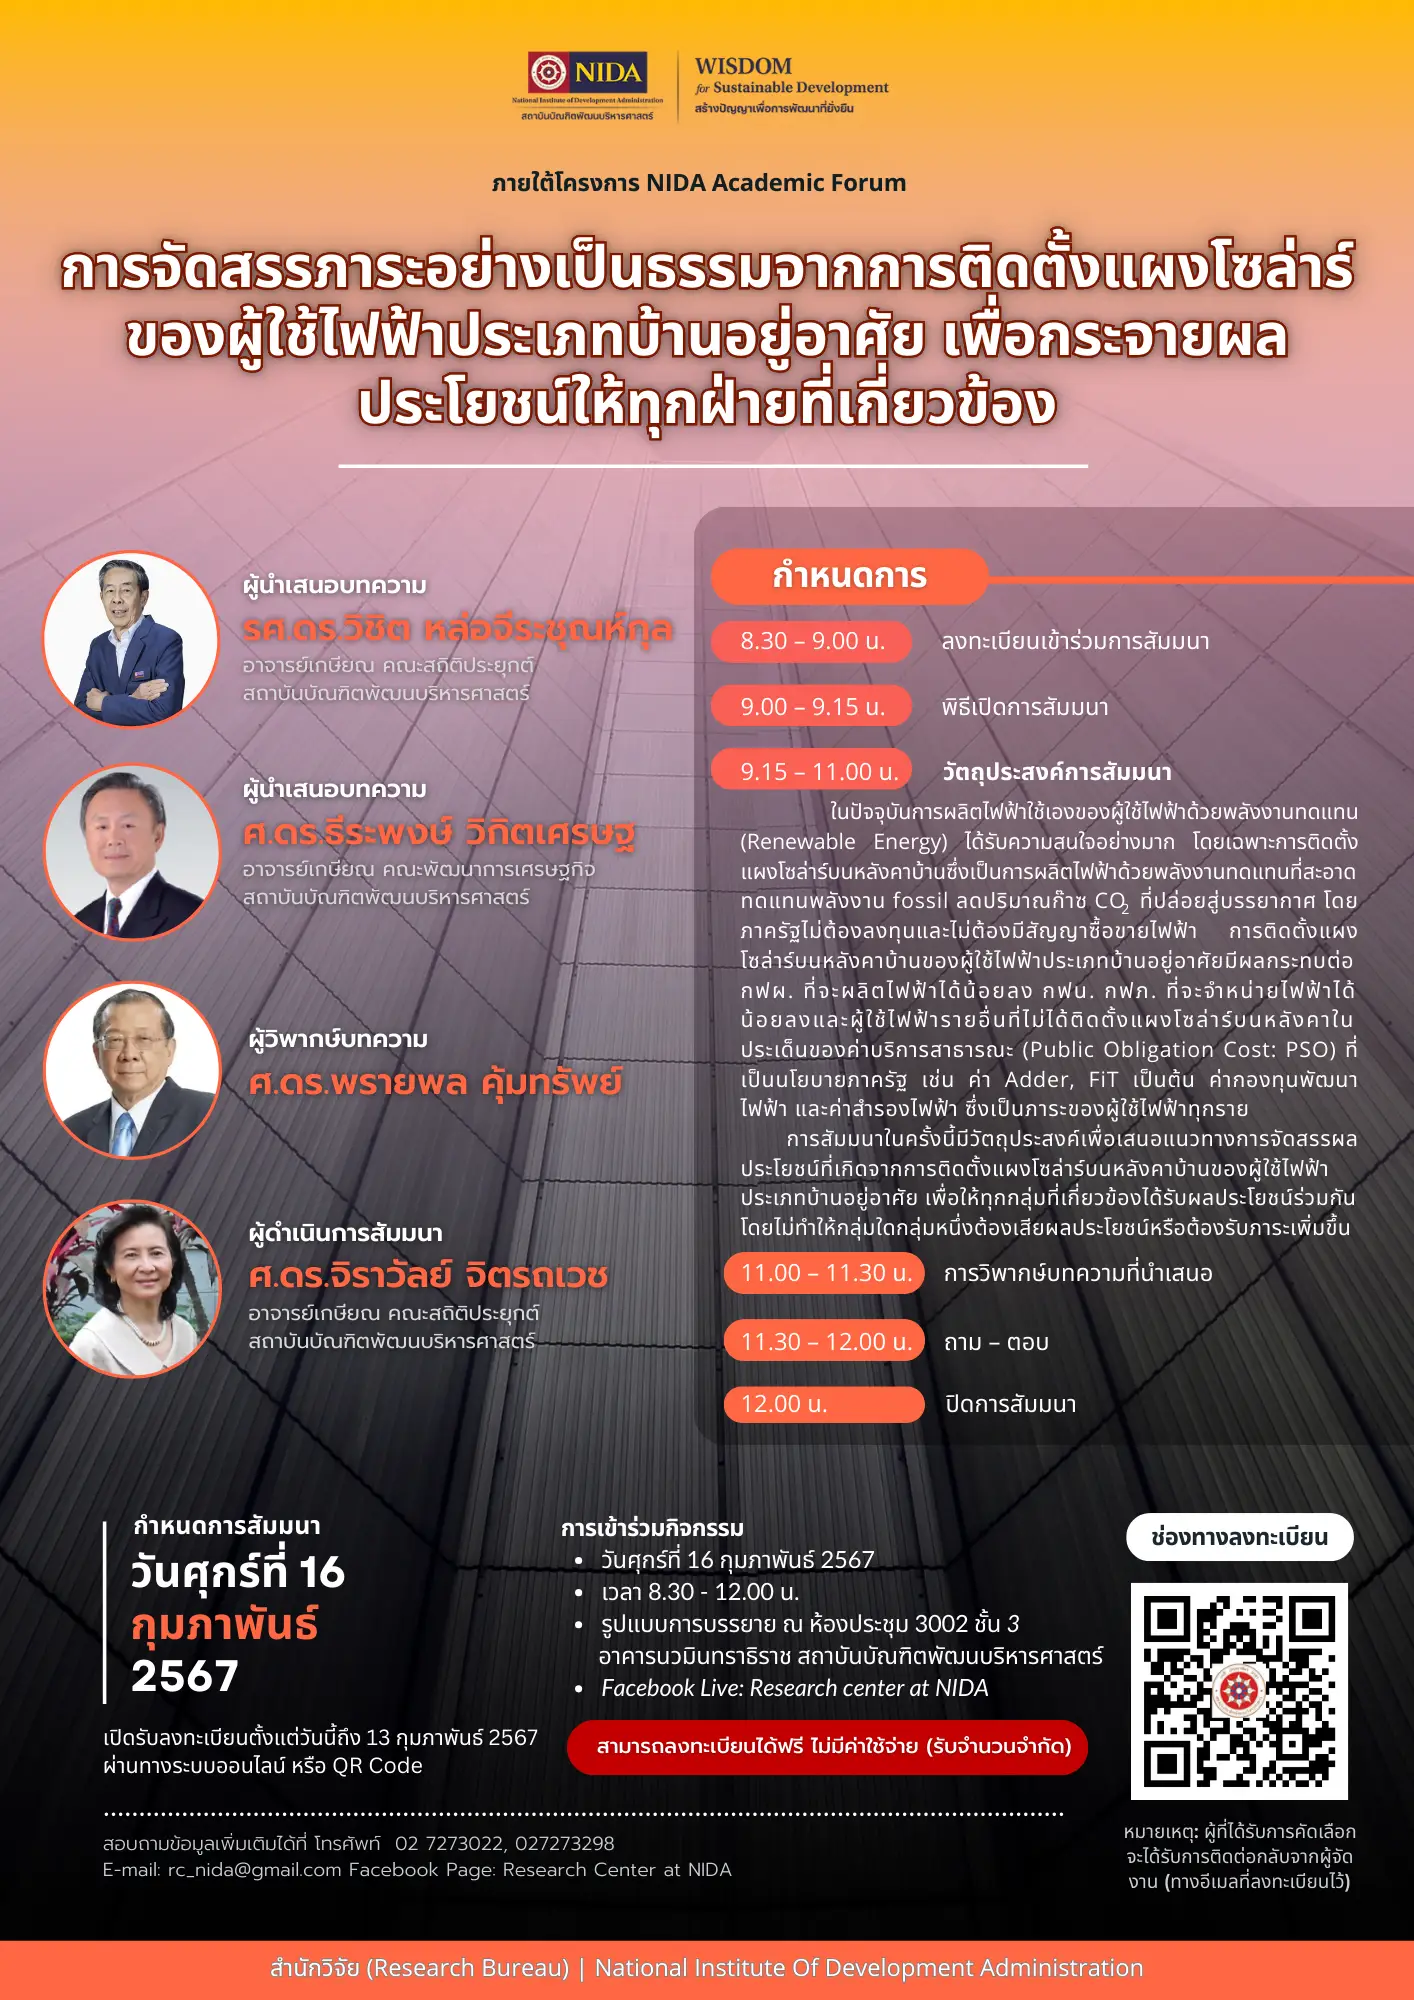 NIDA Academic Forum : การจัดสรรภาระอย่างเป็นธรรมจากการติดตั้งแผงโซล่าร์ของผู้ใช้ไฟฟ้าประเภทบ้านอยู่อาศัยเพื่อกระจายผลประโยชน์ให้ทุกฝ่ายที่เกี่ยวข้อง